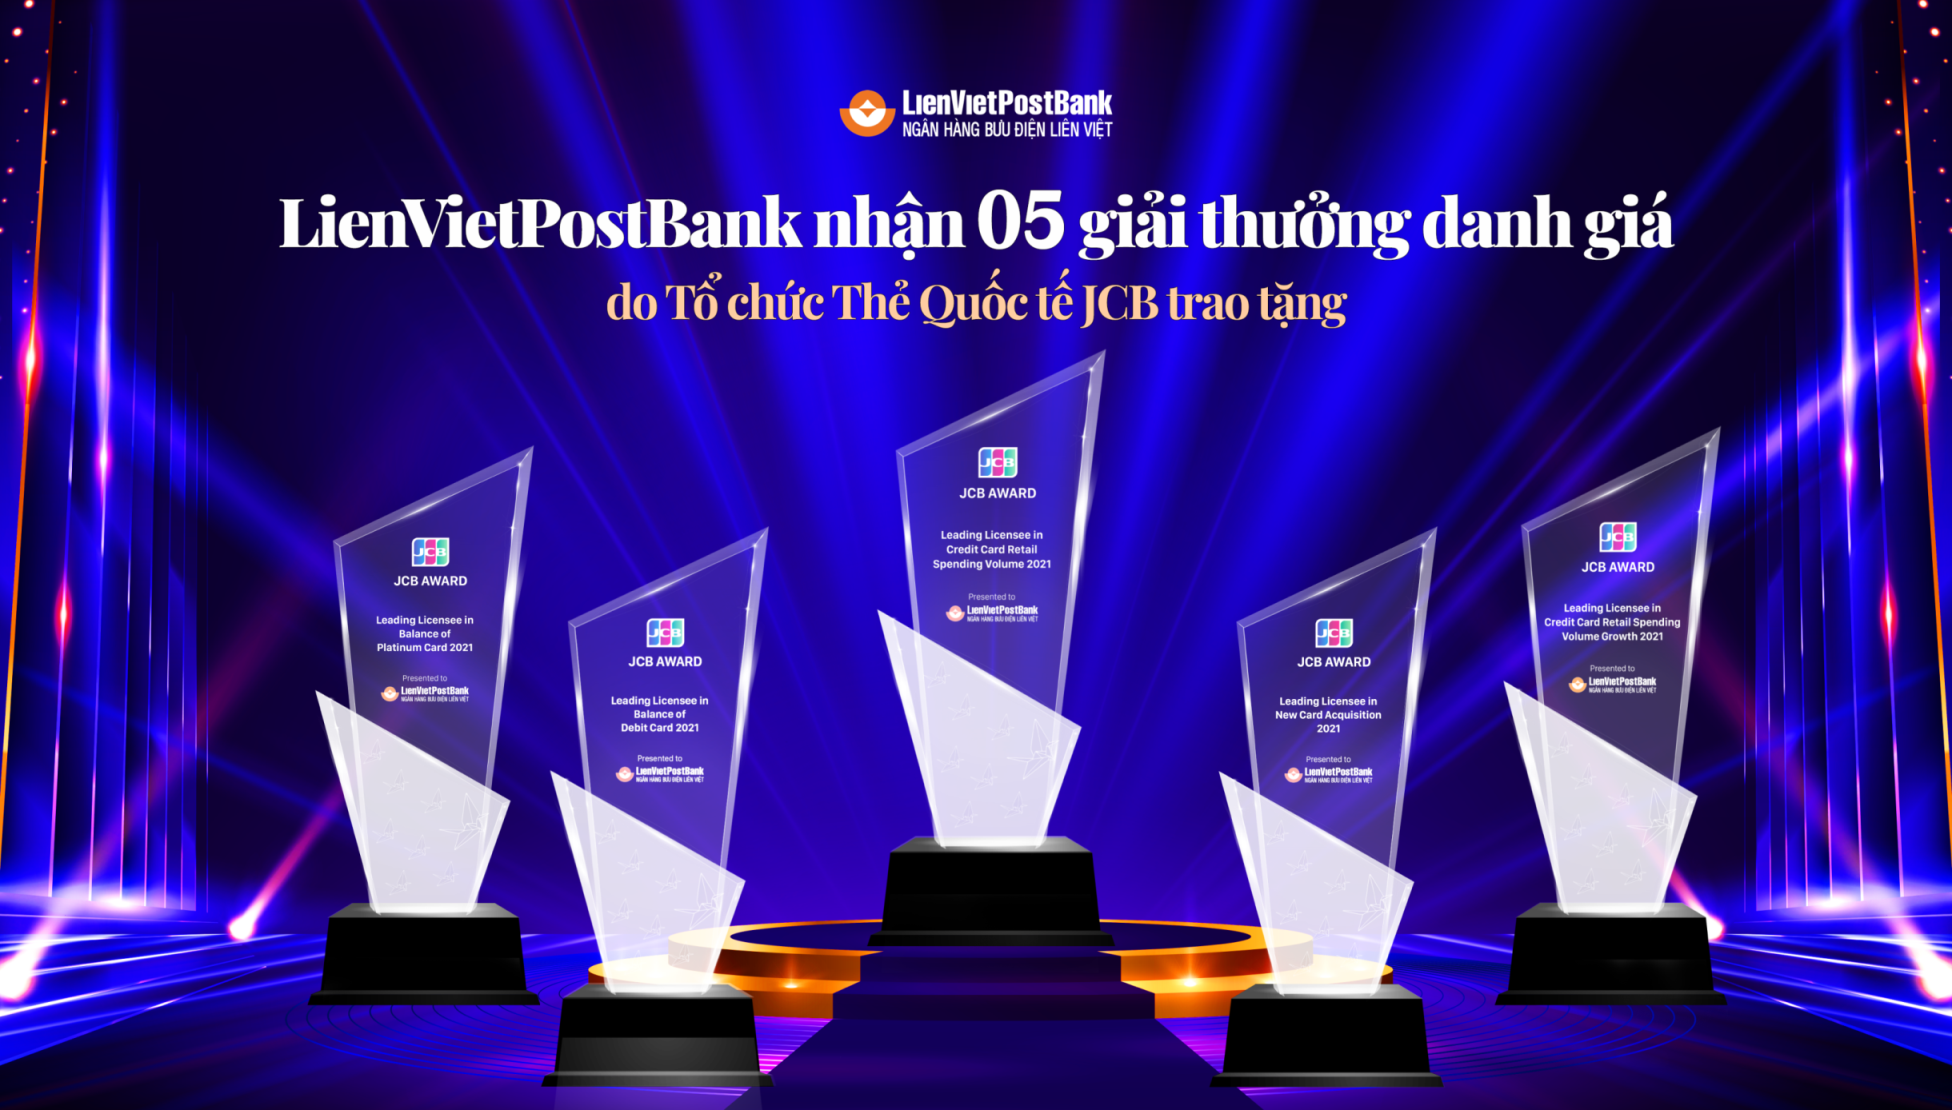 LienVietPostBank được vinh danh 5 hạng mục danh giá của Tổ chức Thẻ quốc tế - Ảnh 2.